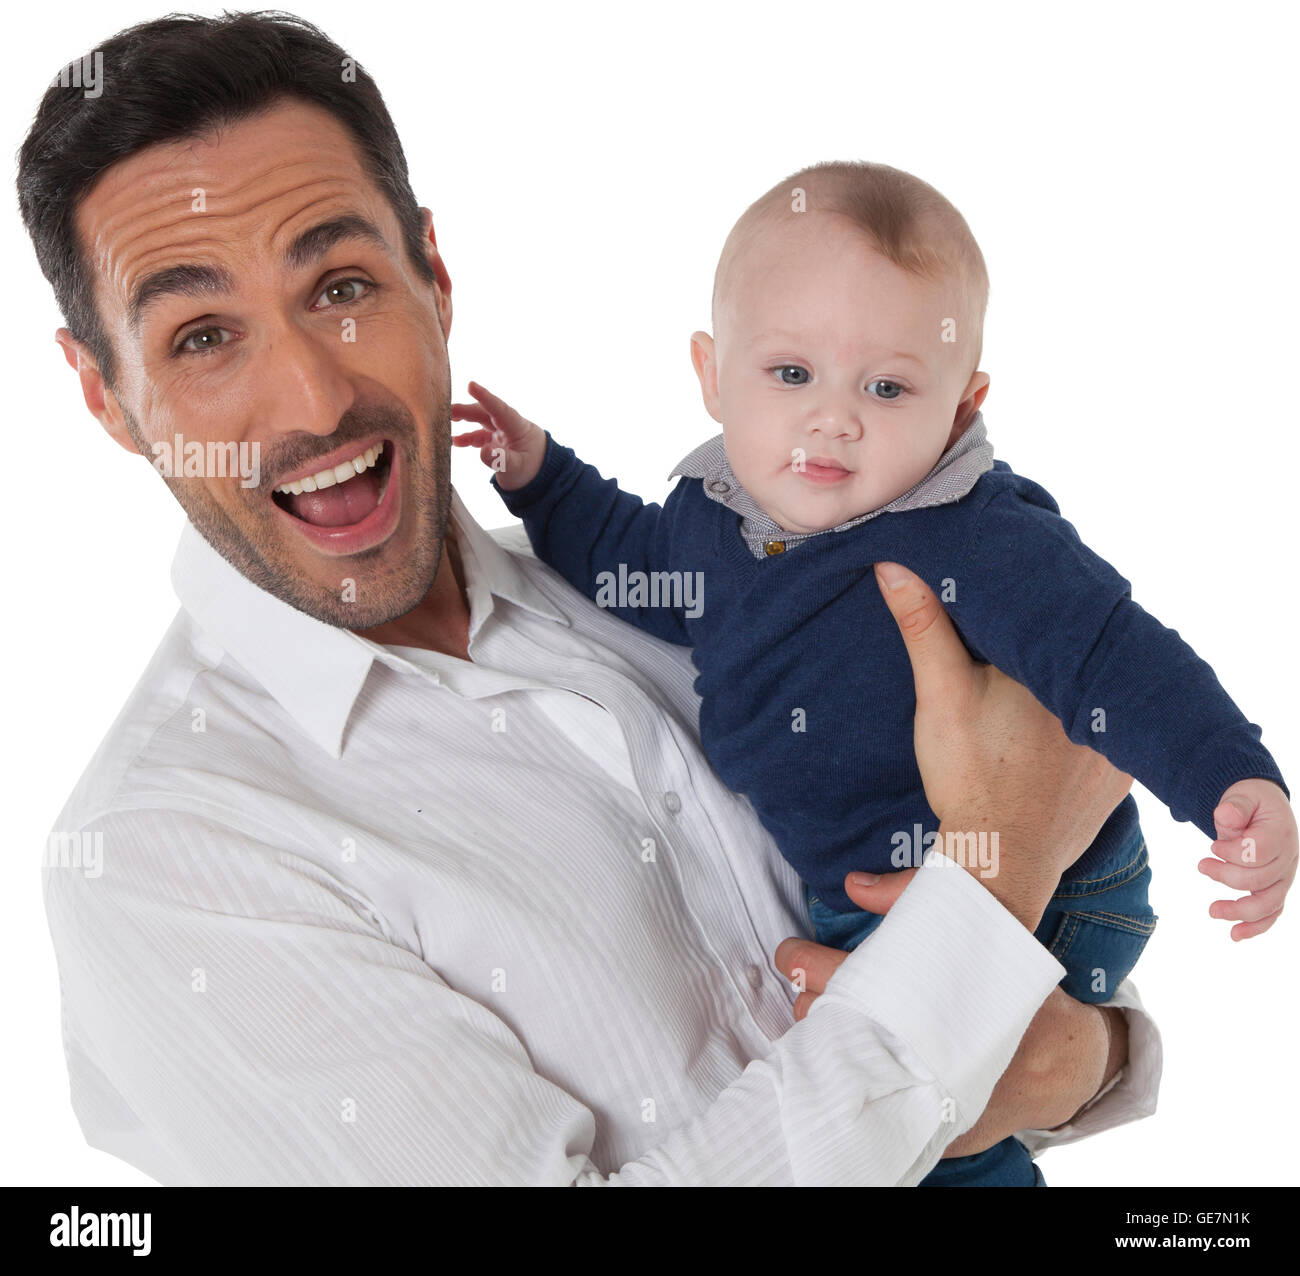 Una foto di allegro uomo con bambino felice padre e figlio sono indossando  casuals stanno trascorrendo il tempo libero isolate su whit Foto stock -  Alamy